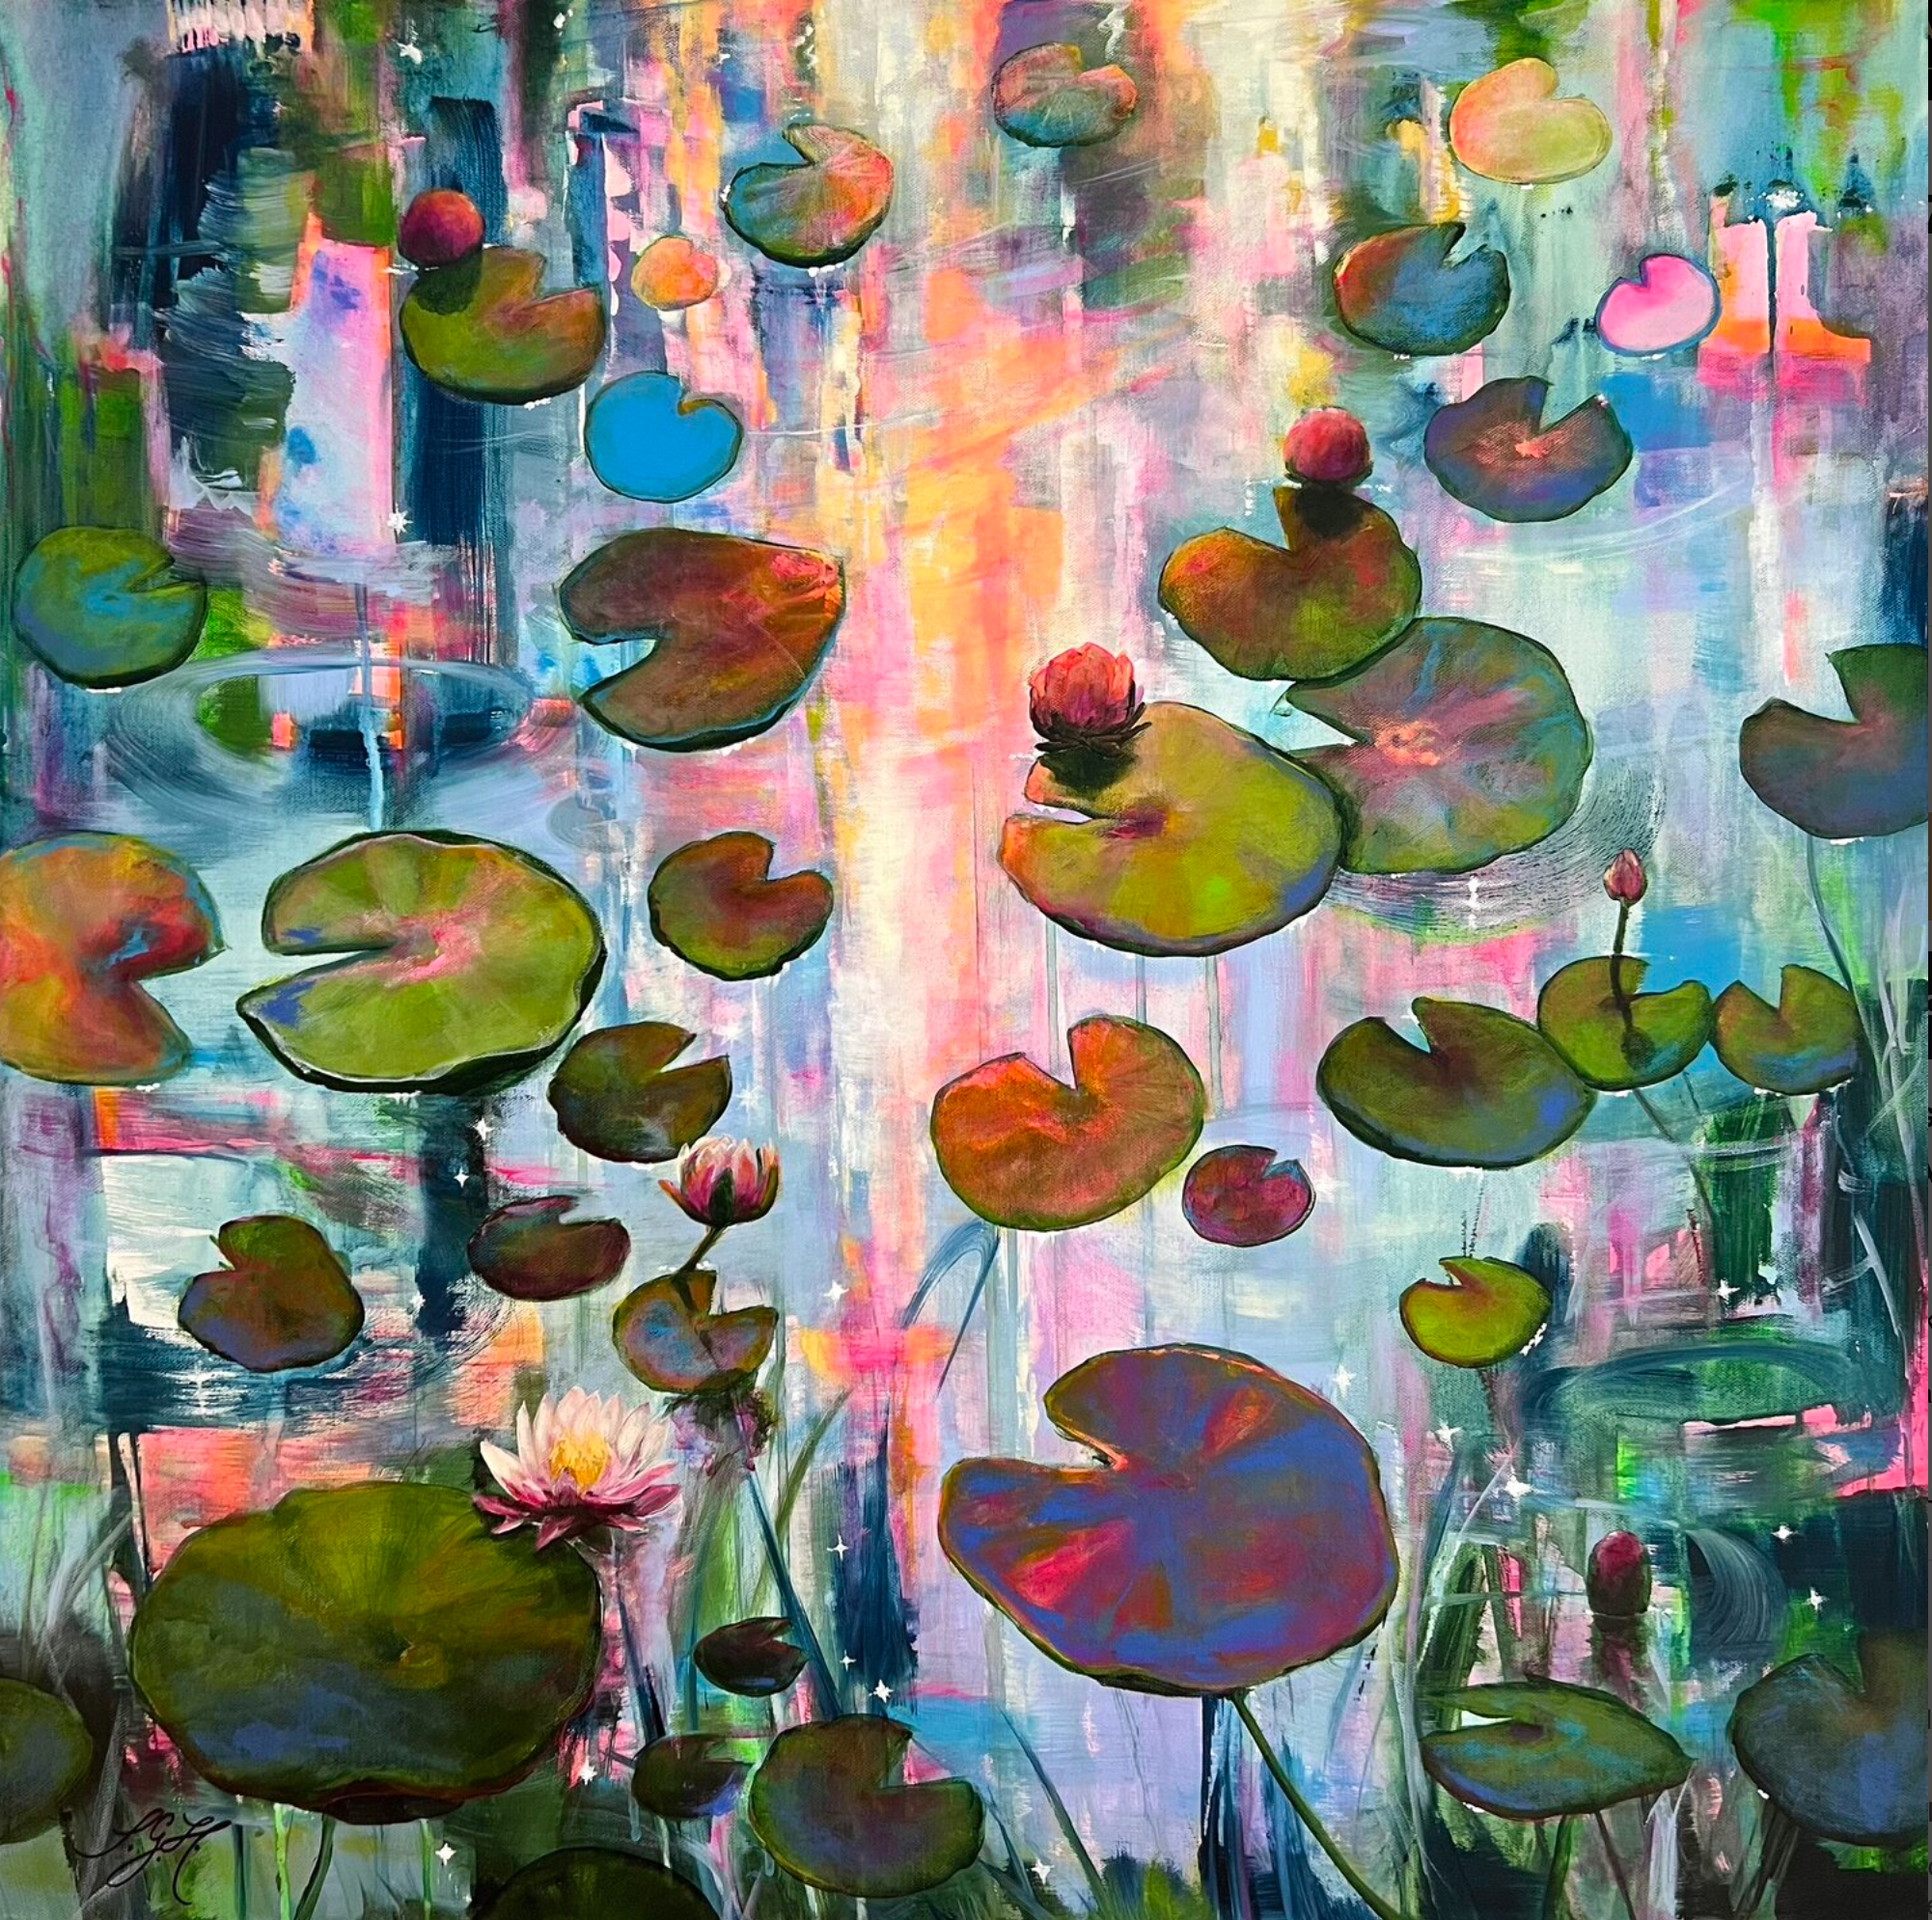 Il dipinto colorato "Always Waterlilies 7" di Sandra Gebhardt-Hoepfner mostra delle ninfee che galleggiano sull'acqua in leggero movimento sotto il sole già leggermente calante. I colori sono rosa neon, azzurro, blu scuro, verde scuro, verde chiaro, giallo, turchese e arancione chiaro.